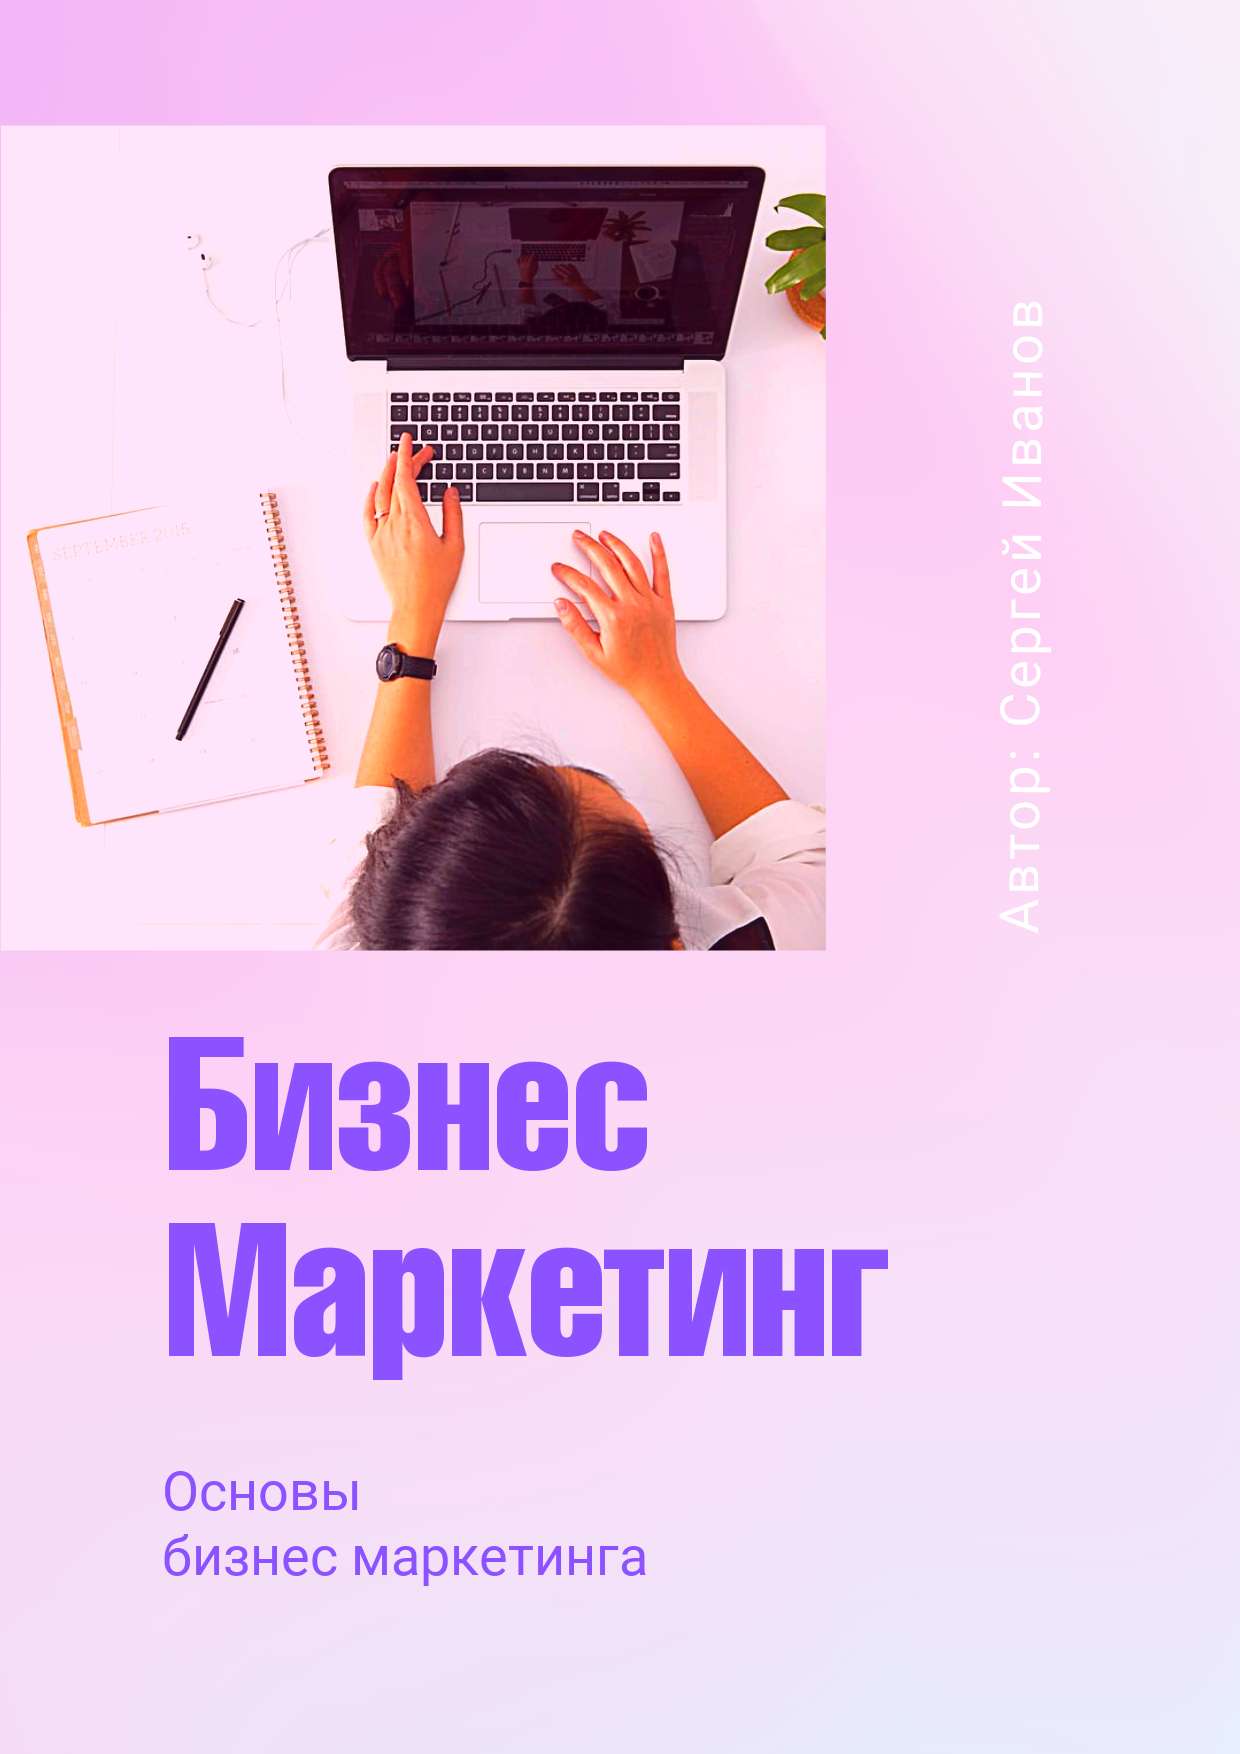 Светло-розовая градиентная обложка для презентации на тему маркетинга с офисным фото